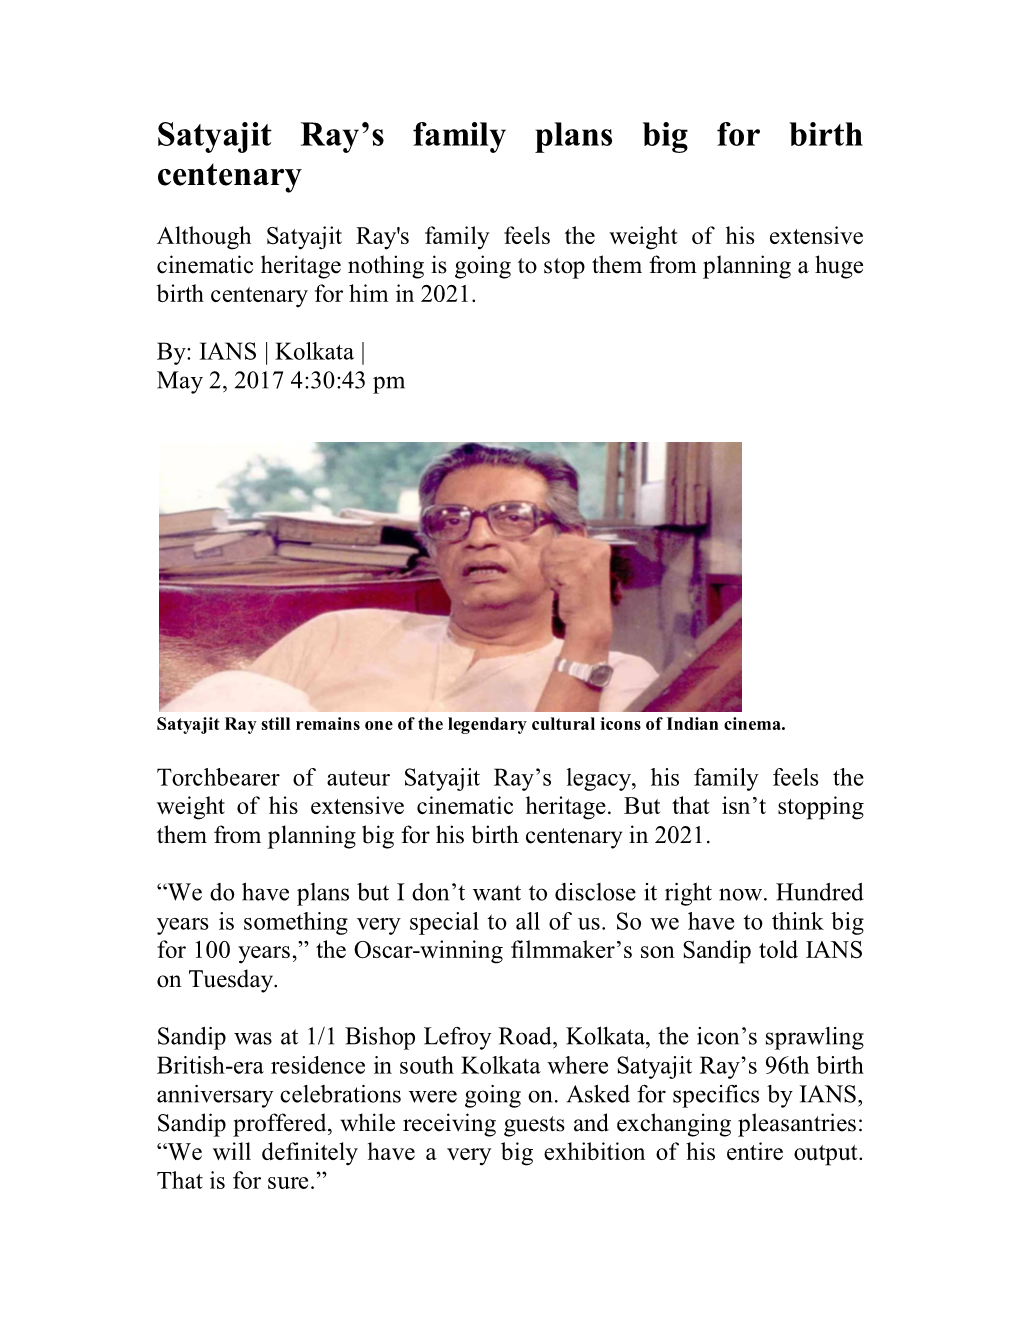 Satyajit Ray's Family Plans Big for Birth Centenary